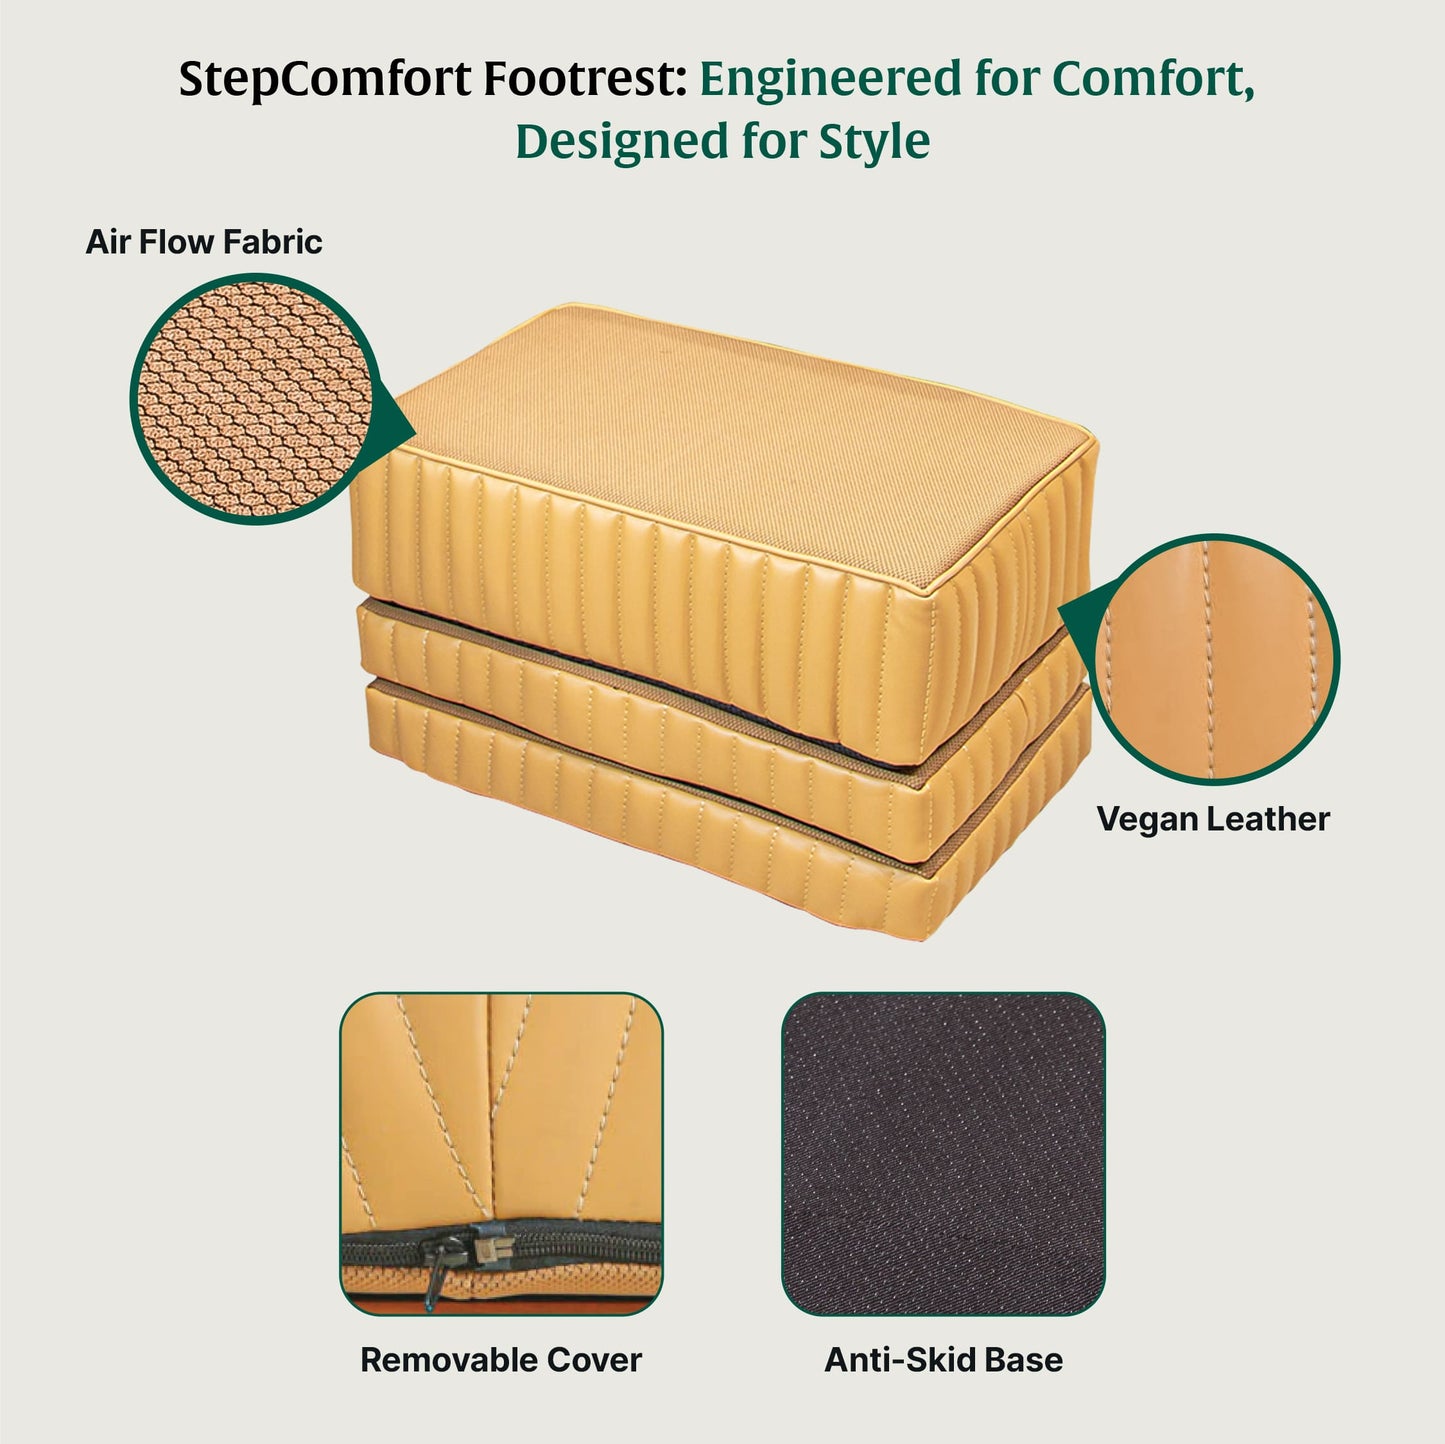 StepComfort Platform Footrest